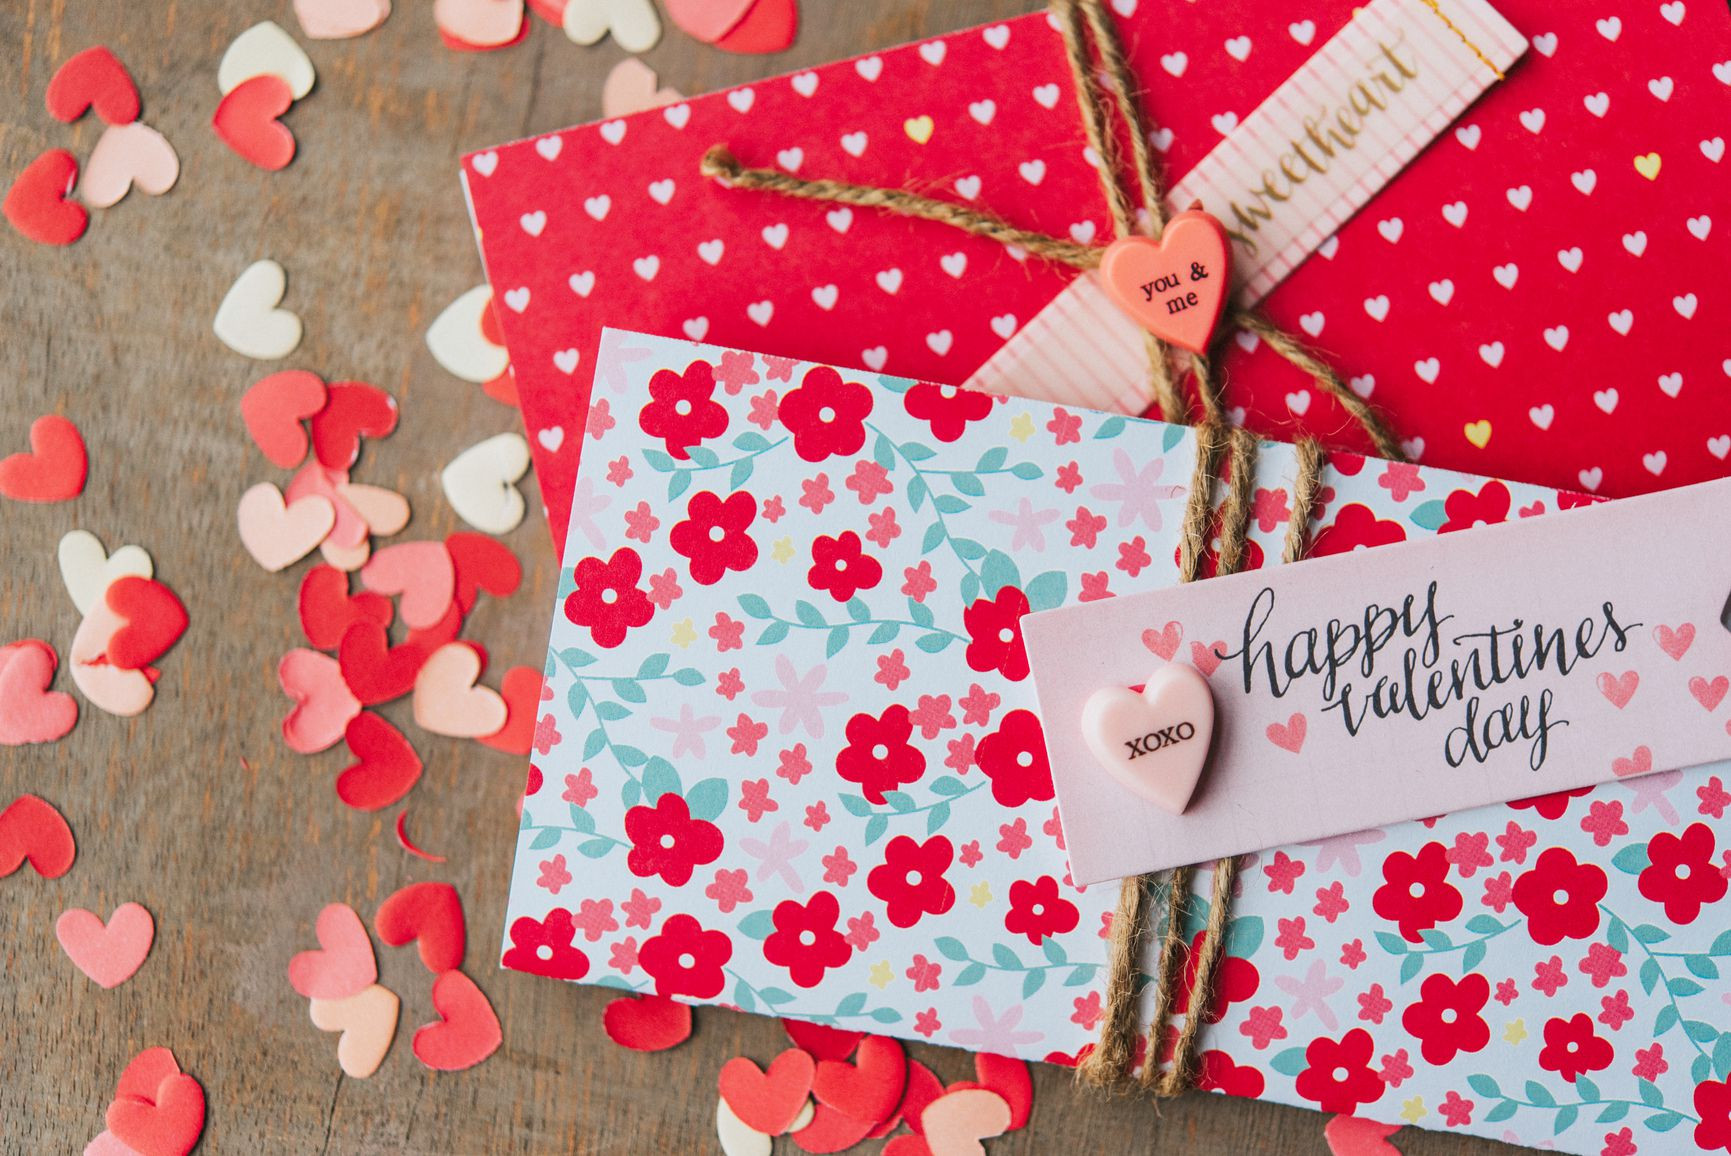 Valentines Day Card Craft
 13 DIY Valentine s Day Card Ideas